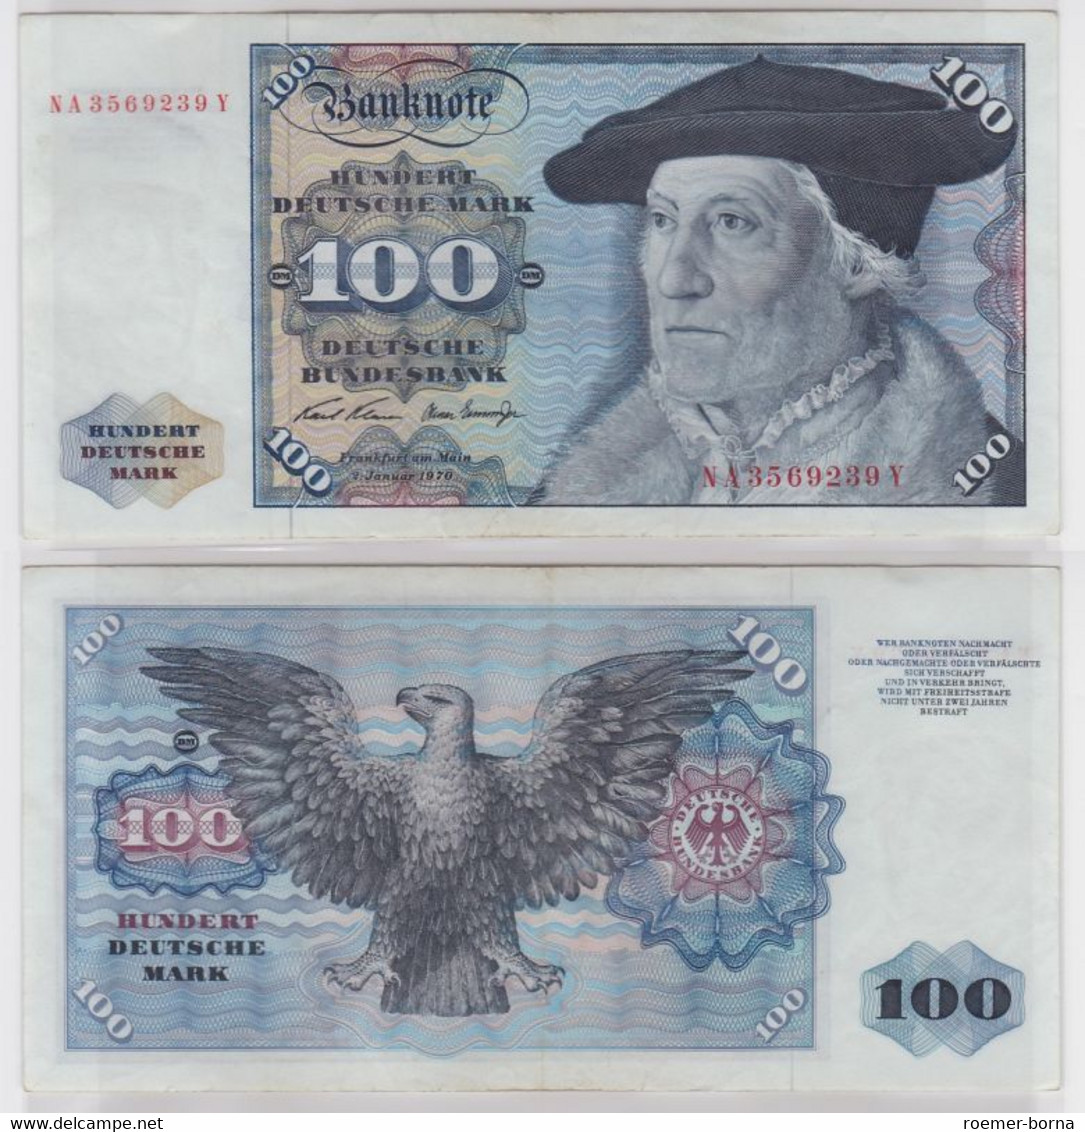 T144612 Banknote 100 DM Deutsche Mark Ro 273a Schein 2.Jan. 1970 KN NA 3569239 Y - 100 Deutsche Mark